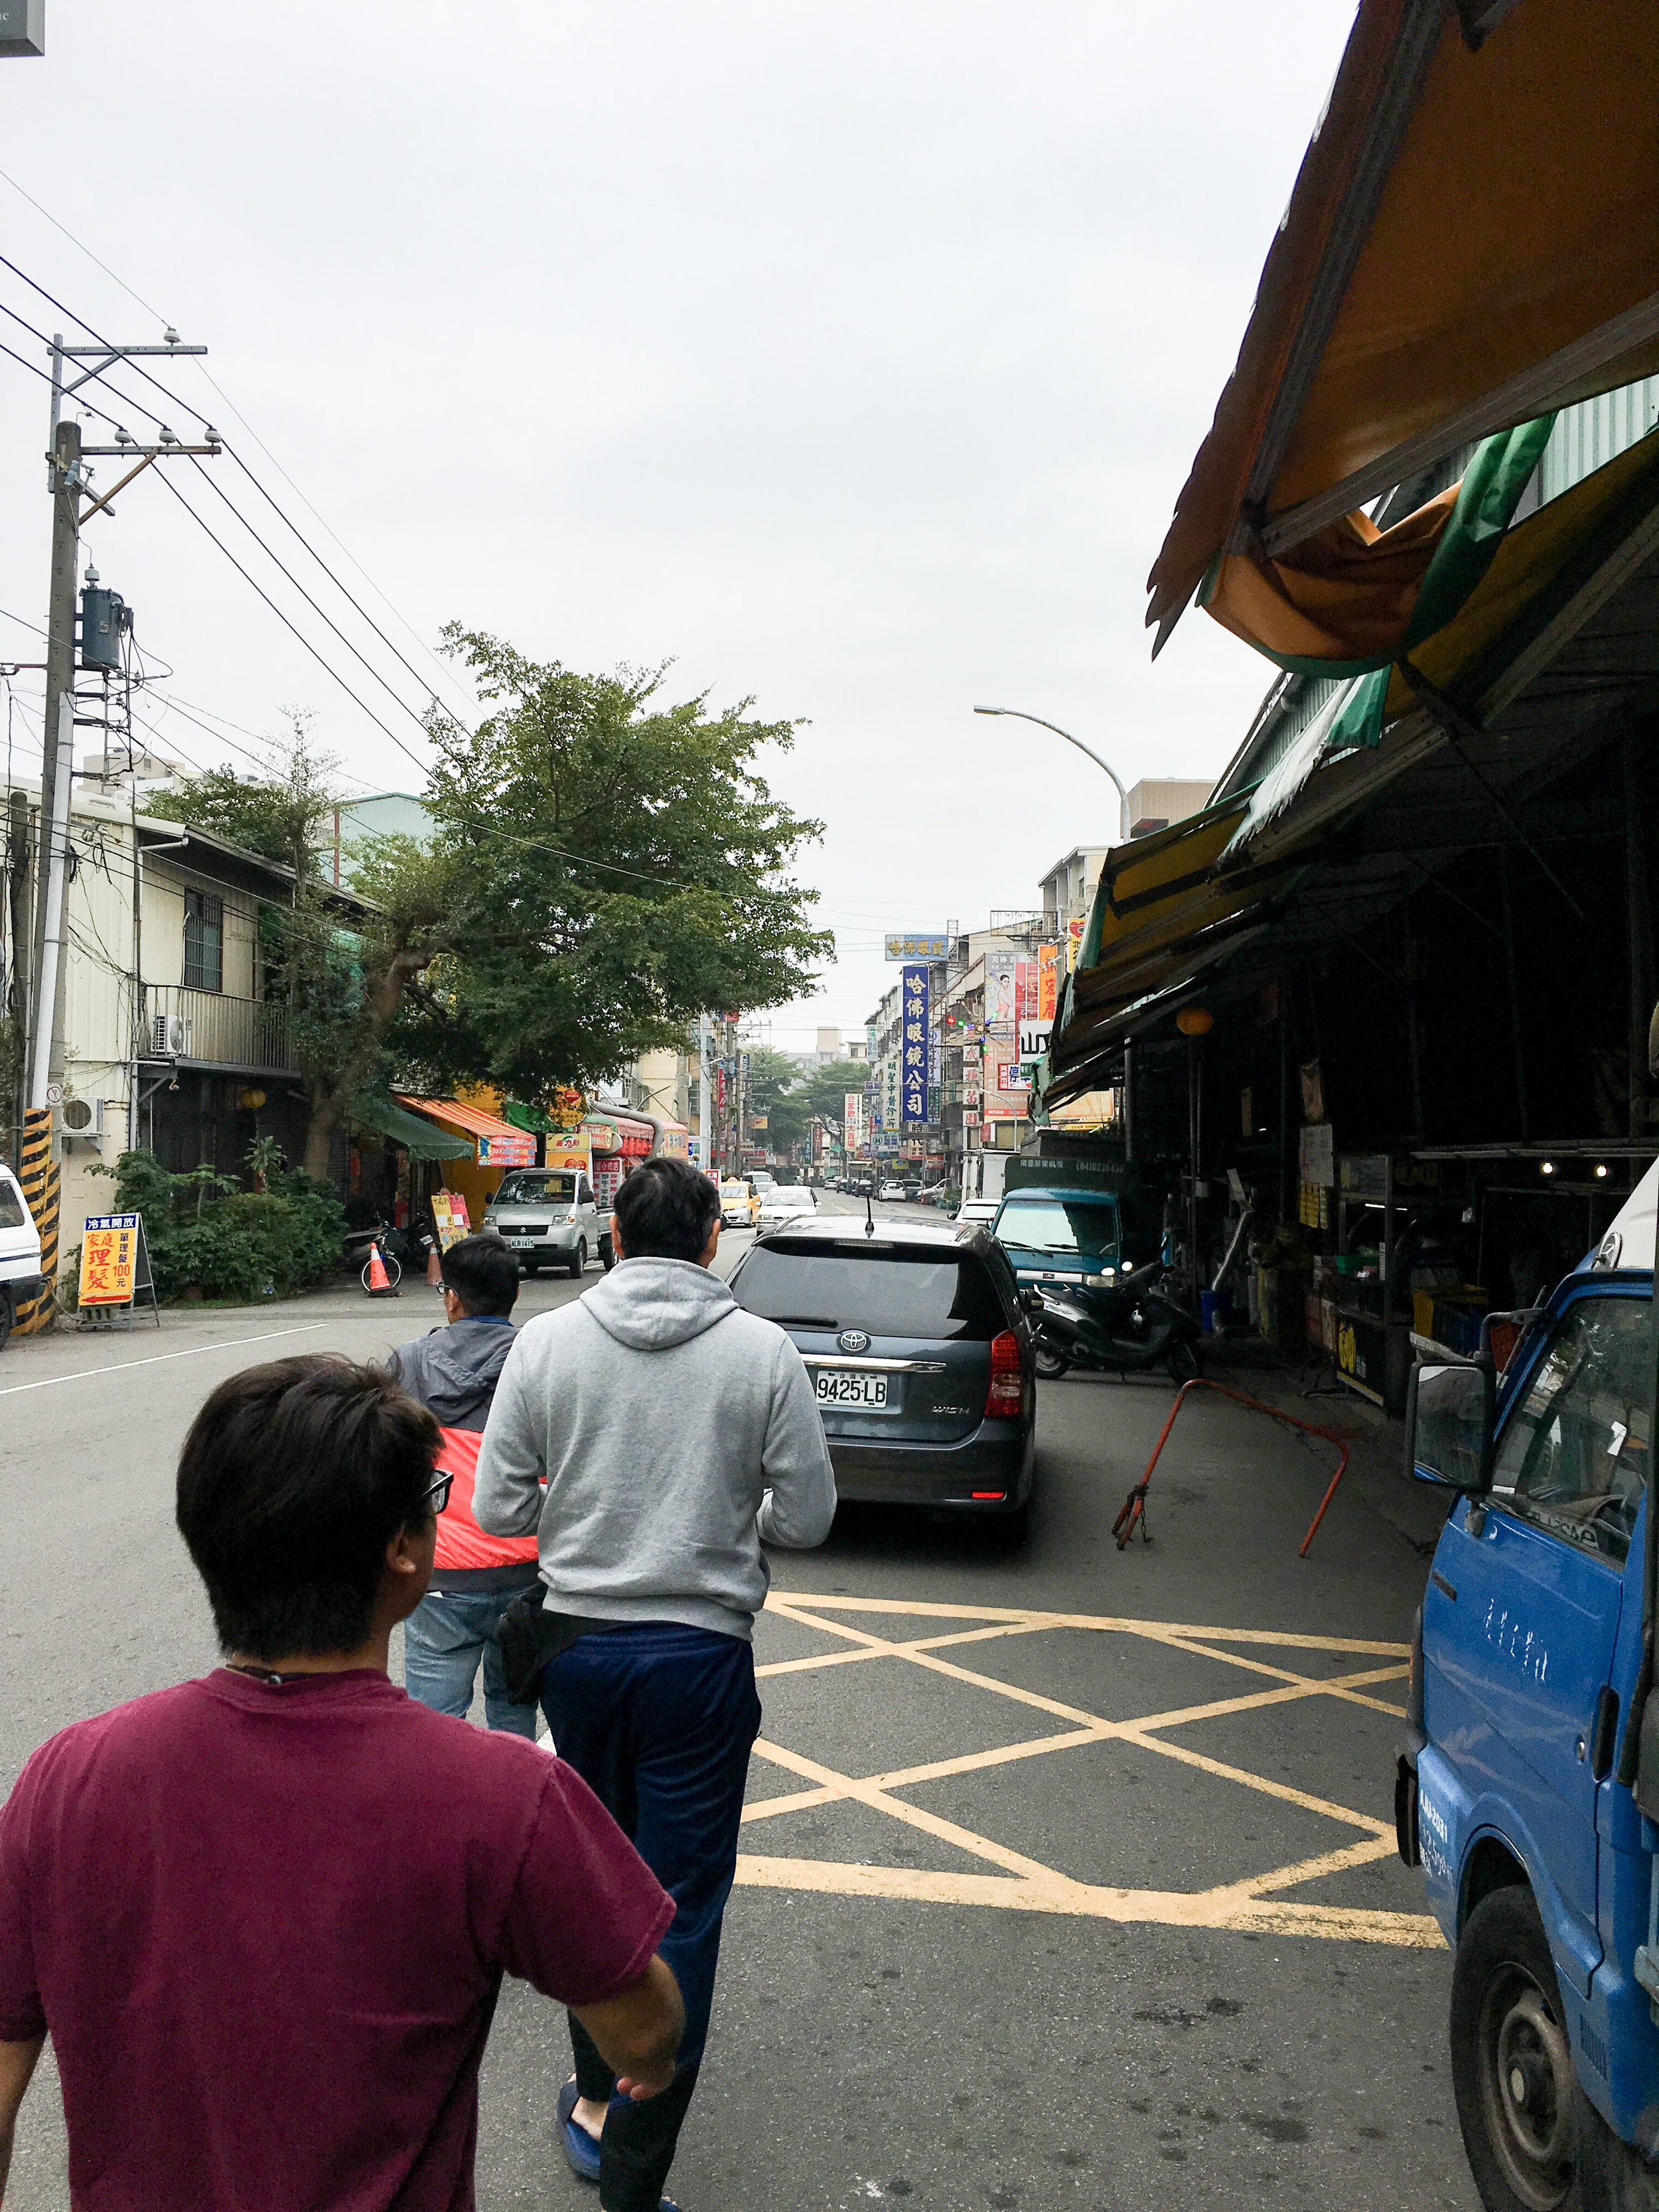 Walking around Taichung